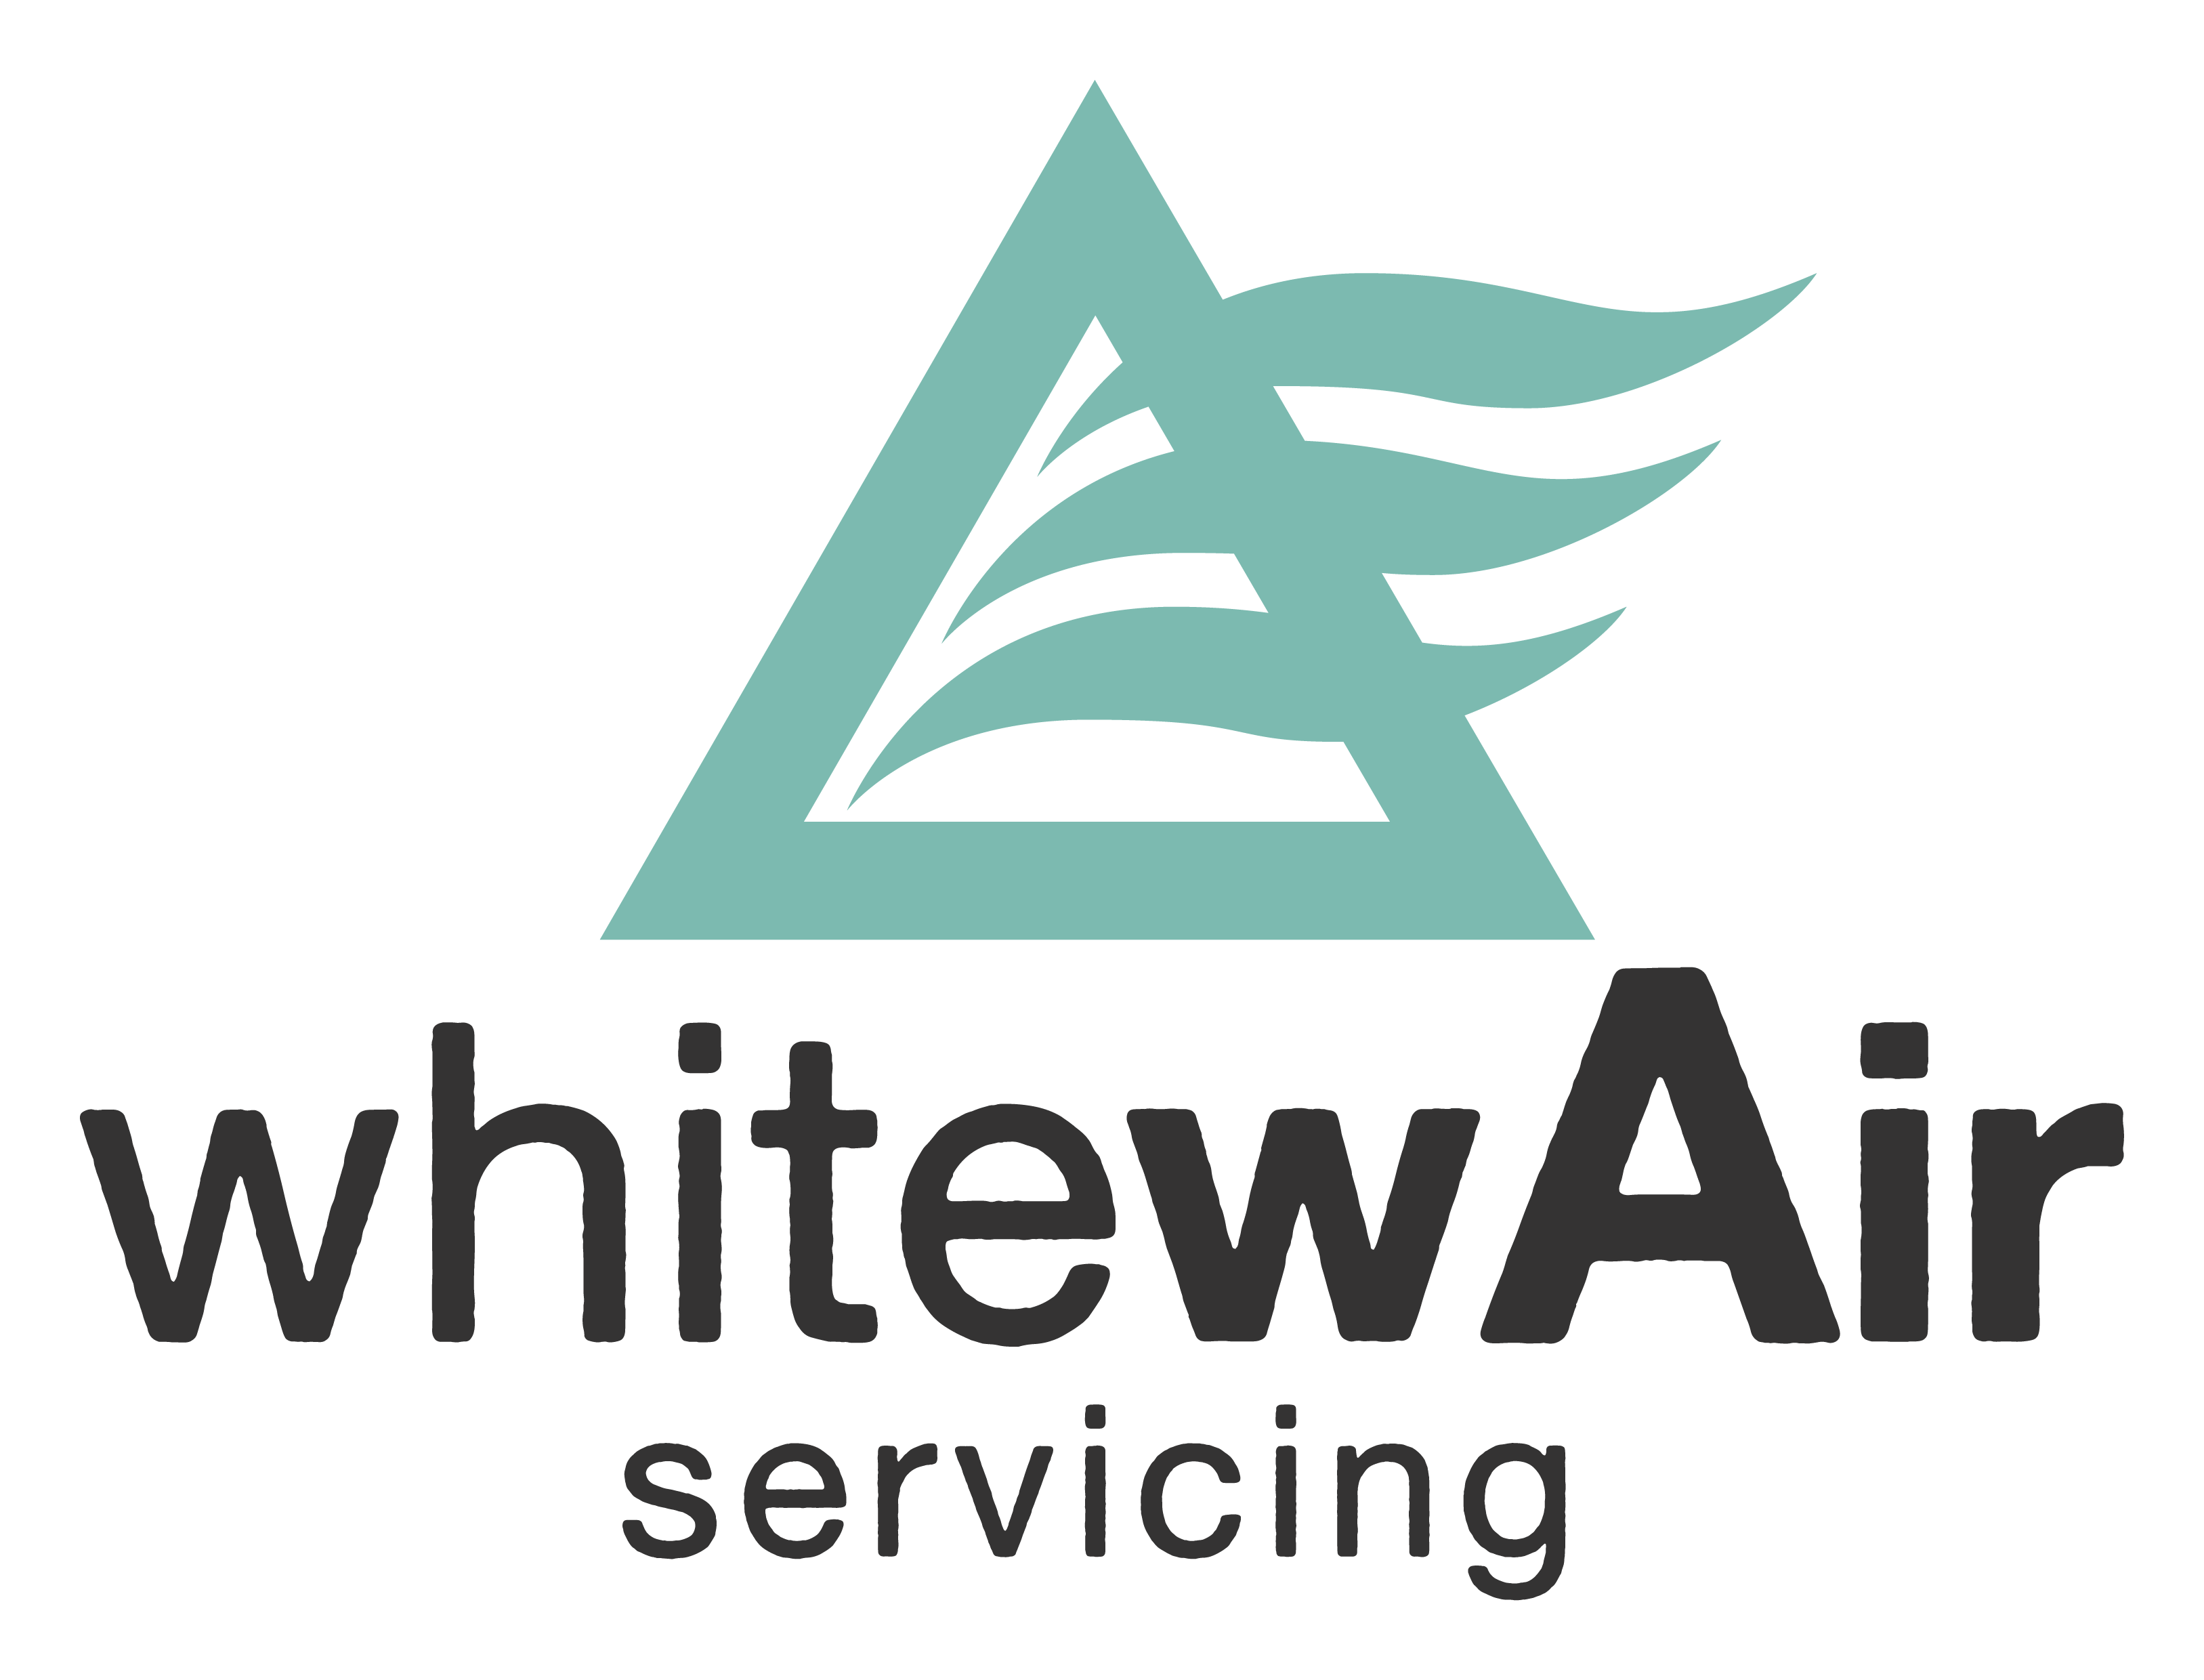 WhitewAir